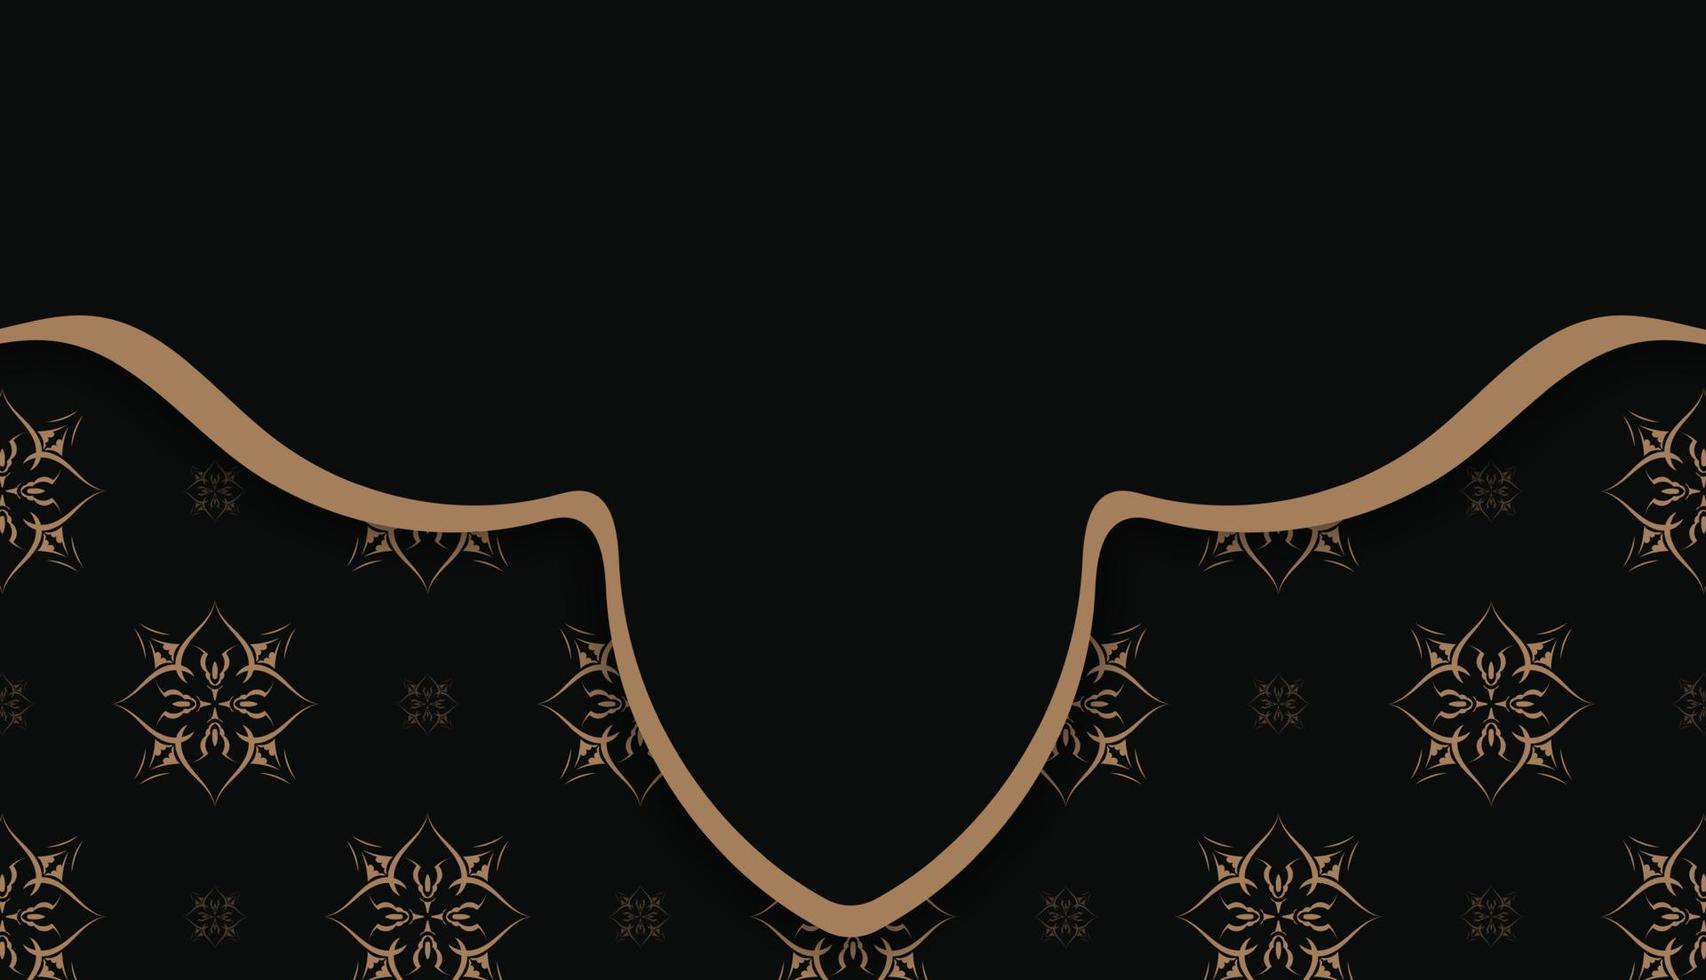 zwart kleur banier sjabloon met mandala bruin ornament en plaats voor logo of tekst vector